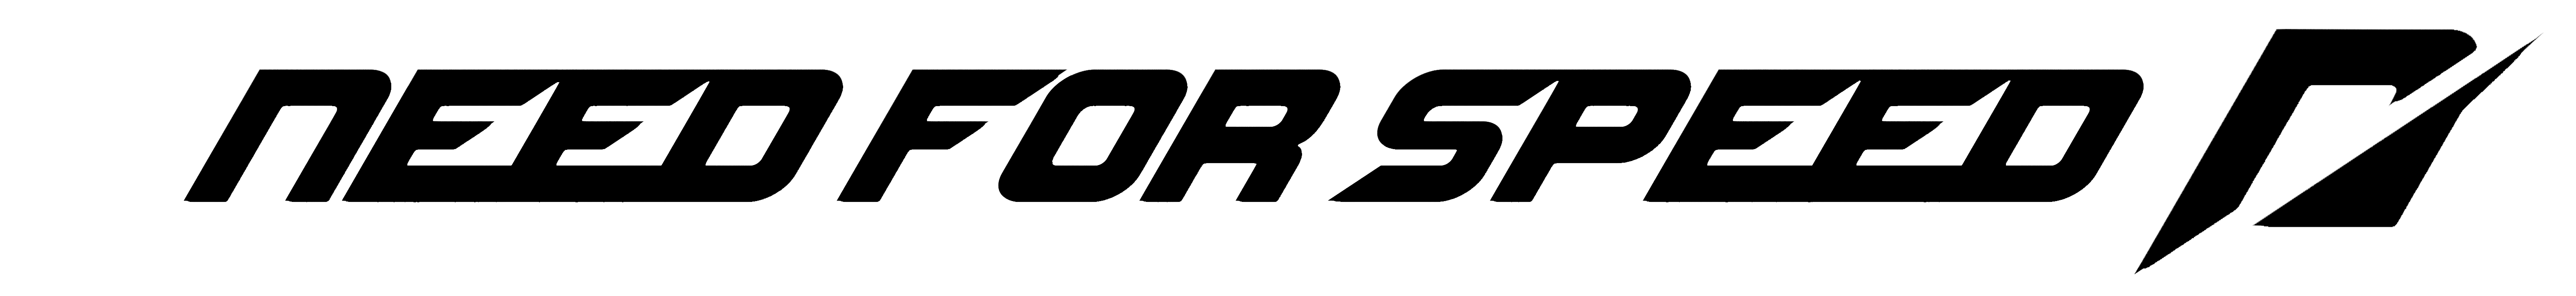 nfsshift-logo.png